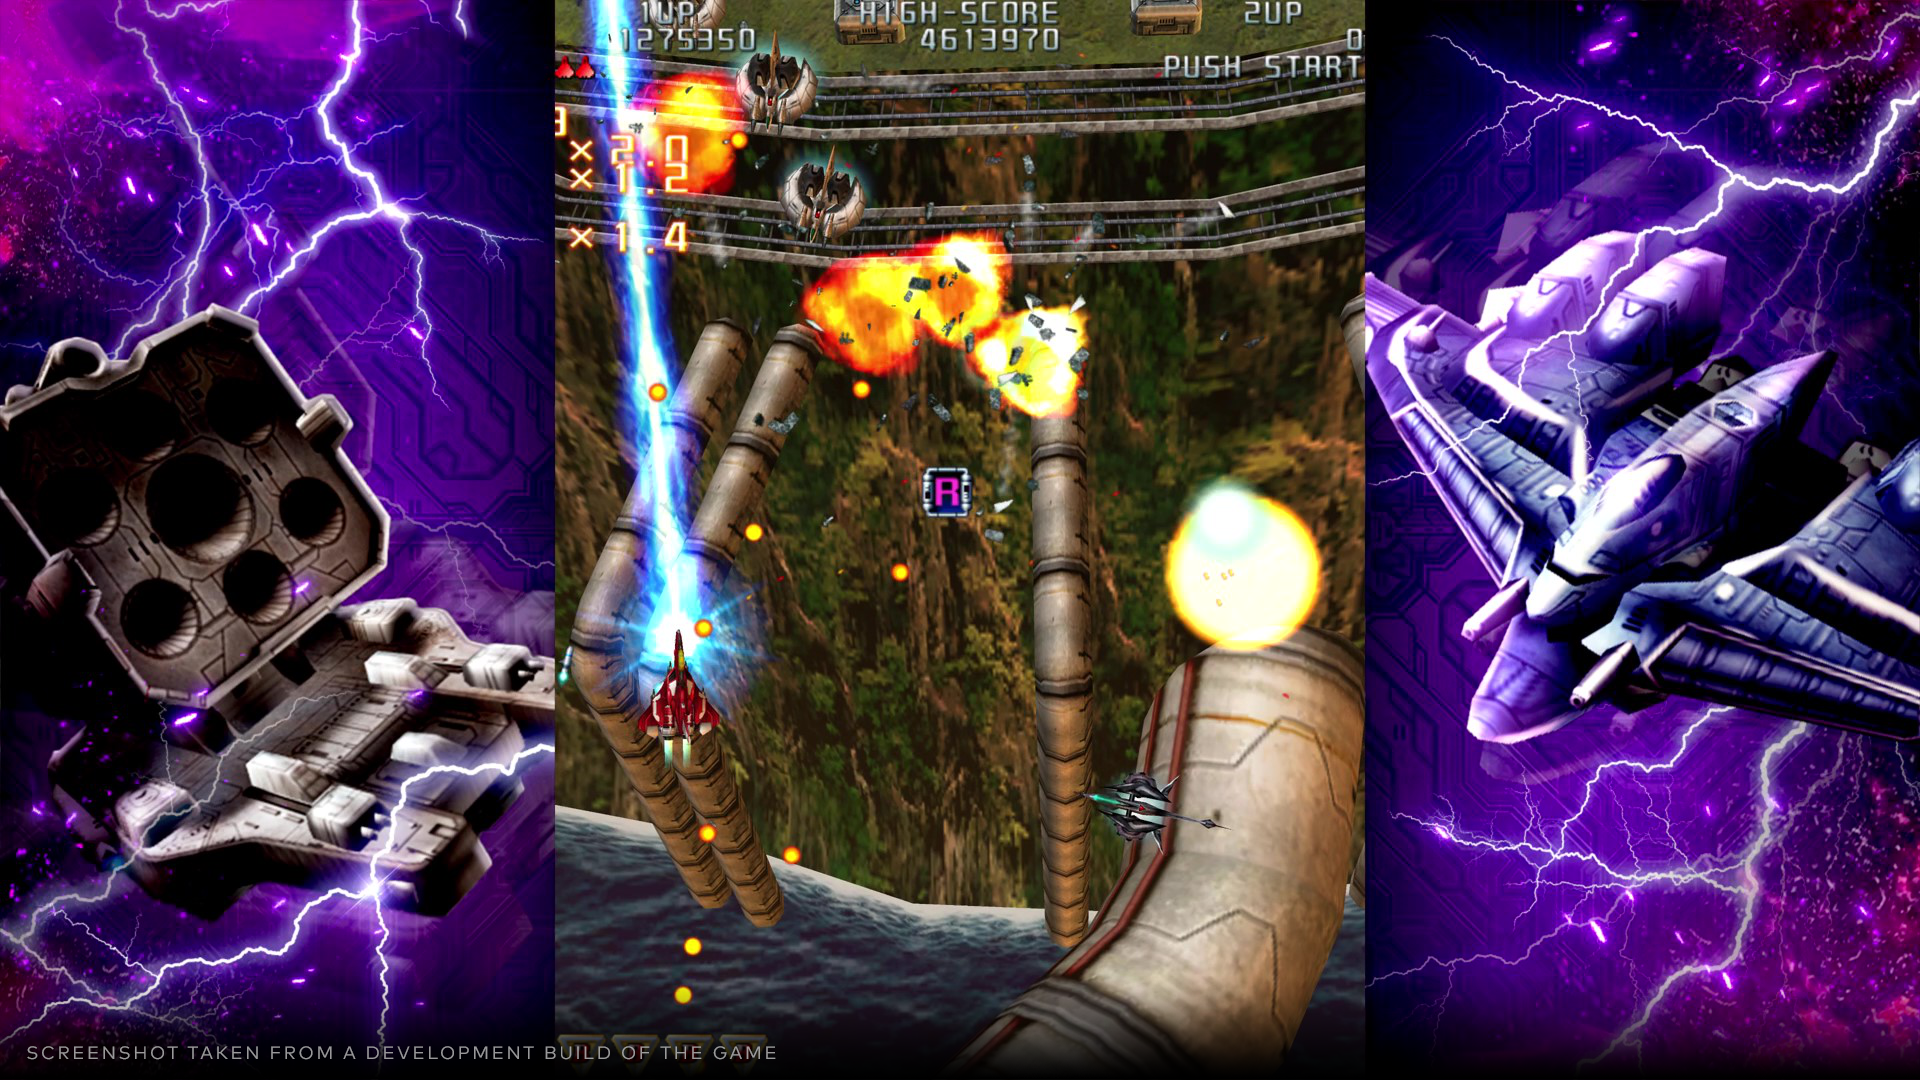 Raiden III x MIKADO MANIAX  - Deluxe Edition - PS4®